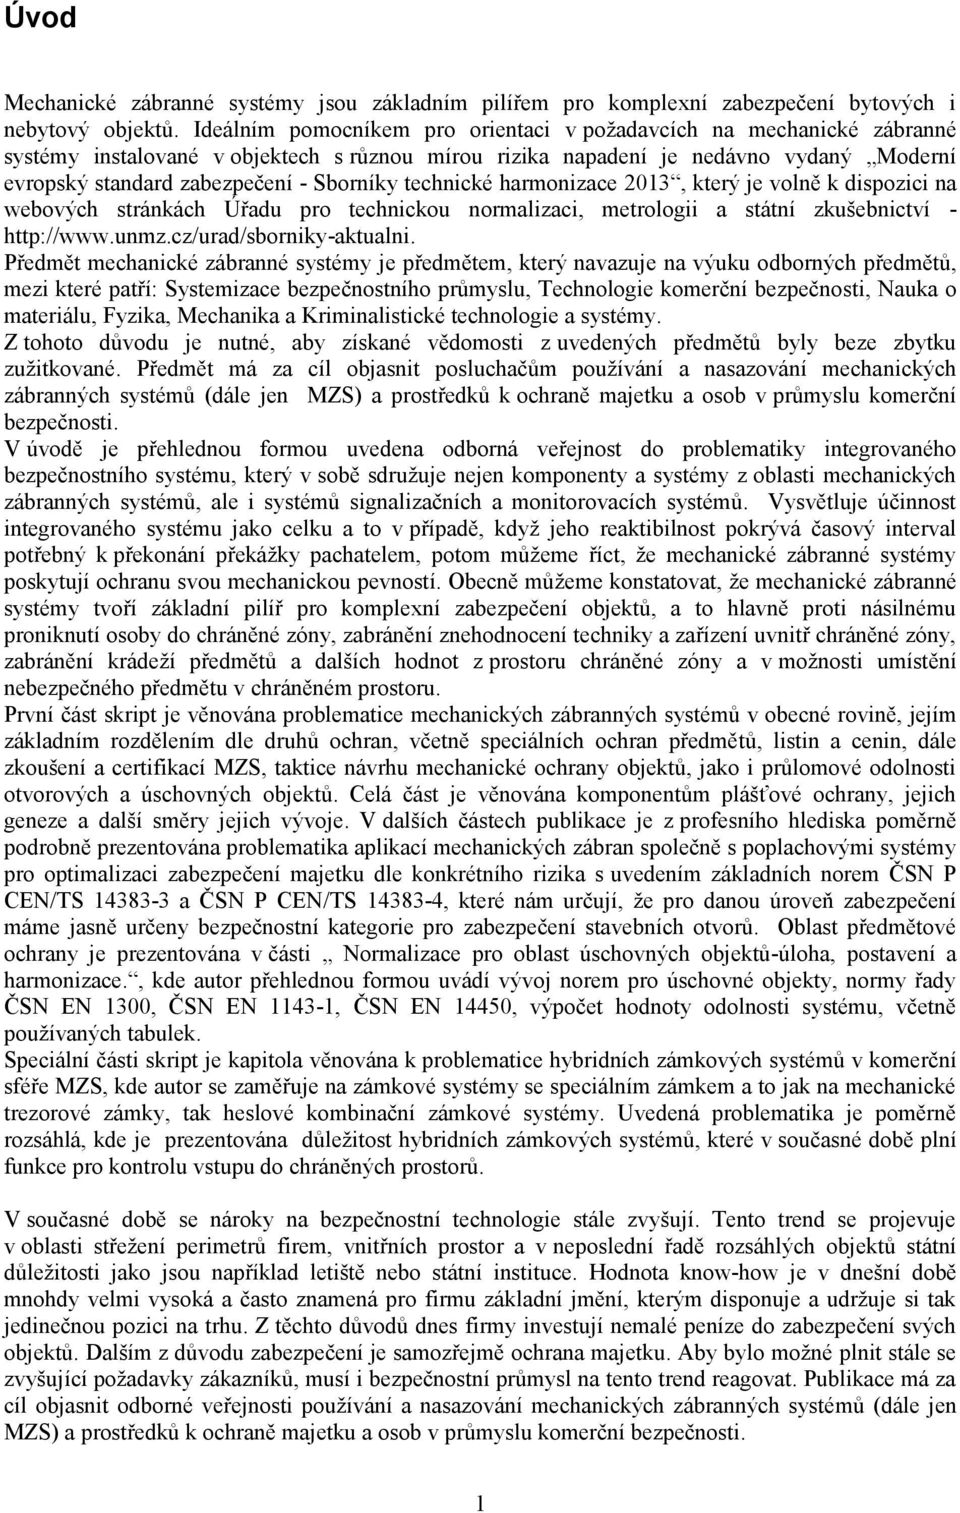 Sborníky technické harmonizace 2013, který je volně k dispozici na webových stránkách Úřadu pro technickou normalizaci, metrologii a státní zkušebnictví - http://www.unmz.cz/urad/sborniky-aktualni.